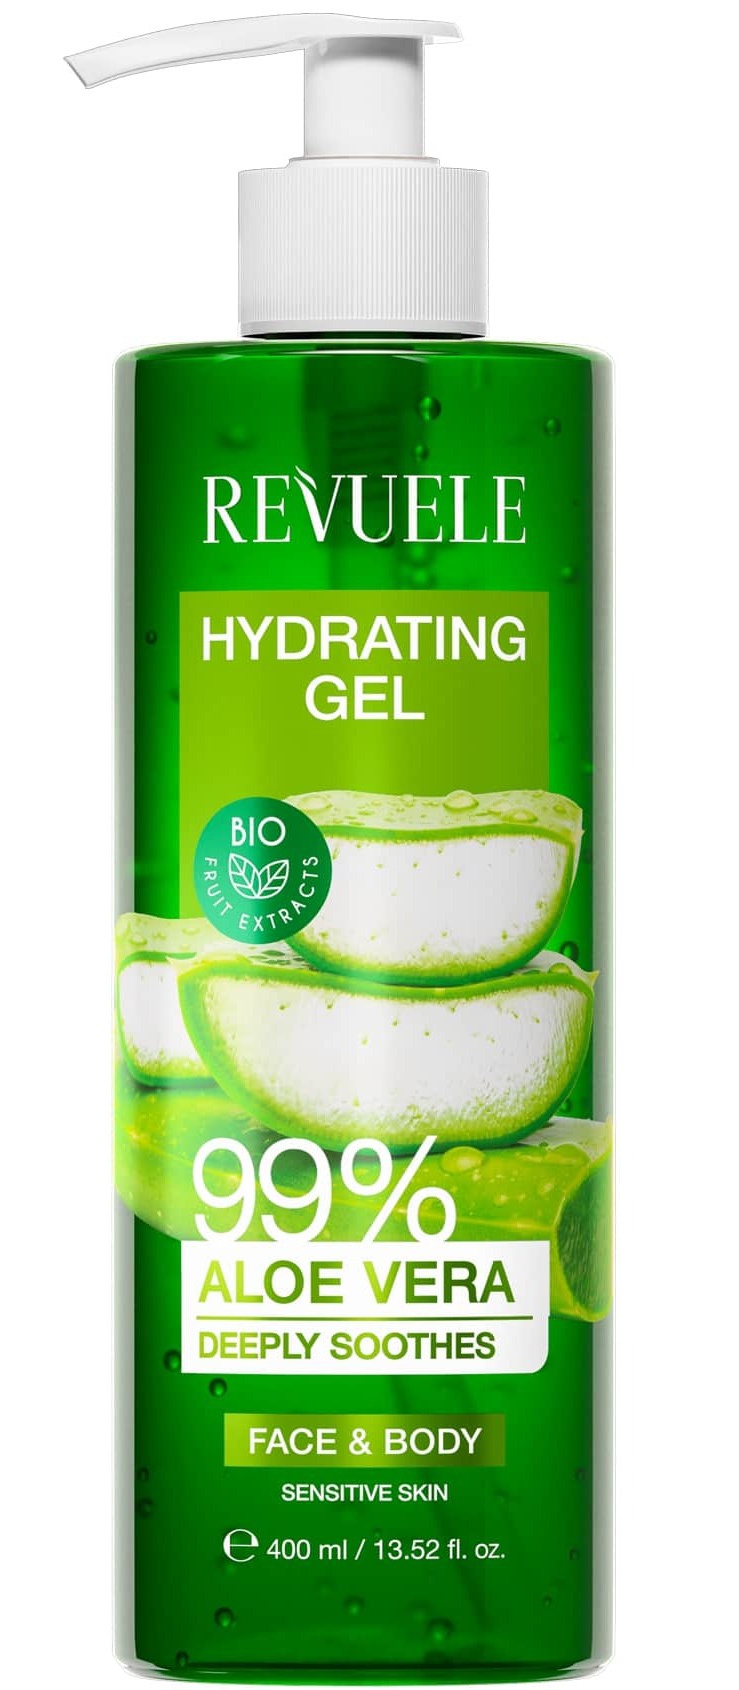 Revuele Hydrating Gel Aloe Vera 99%